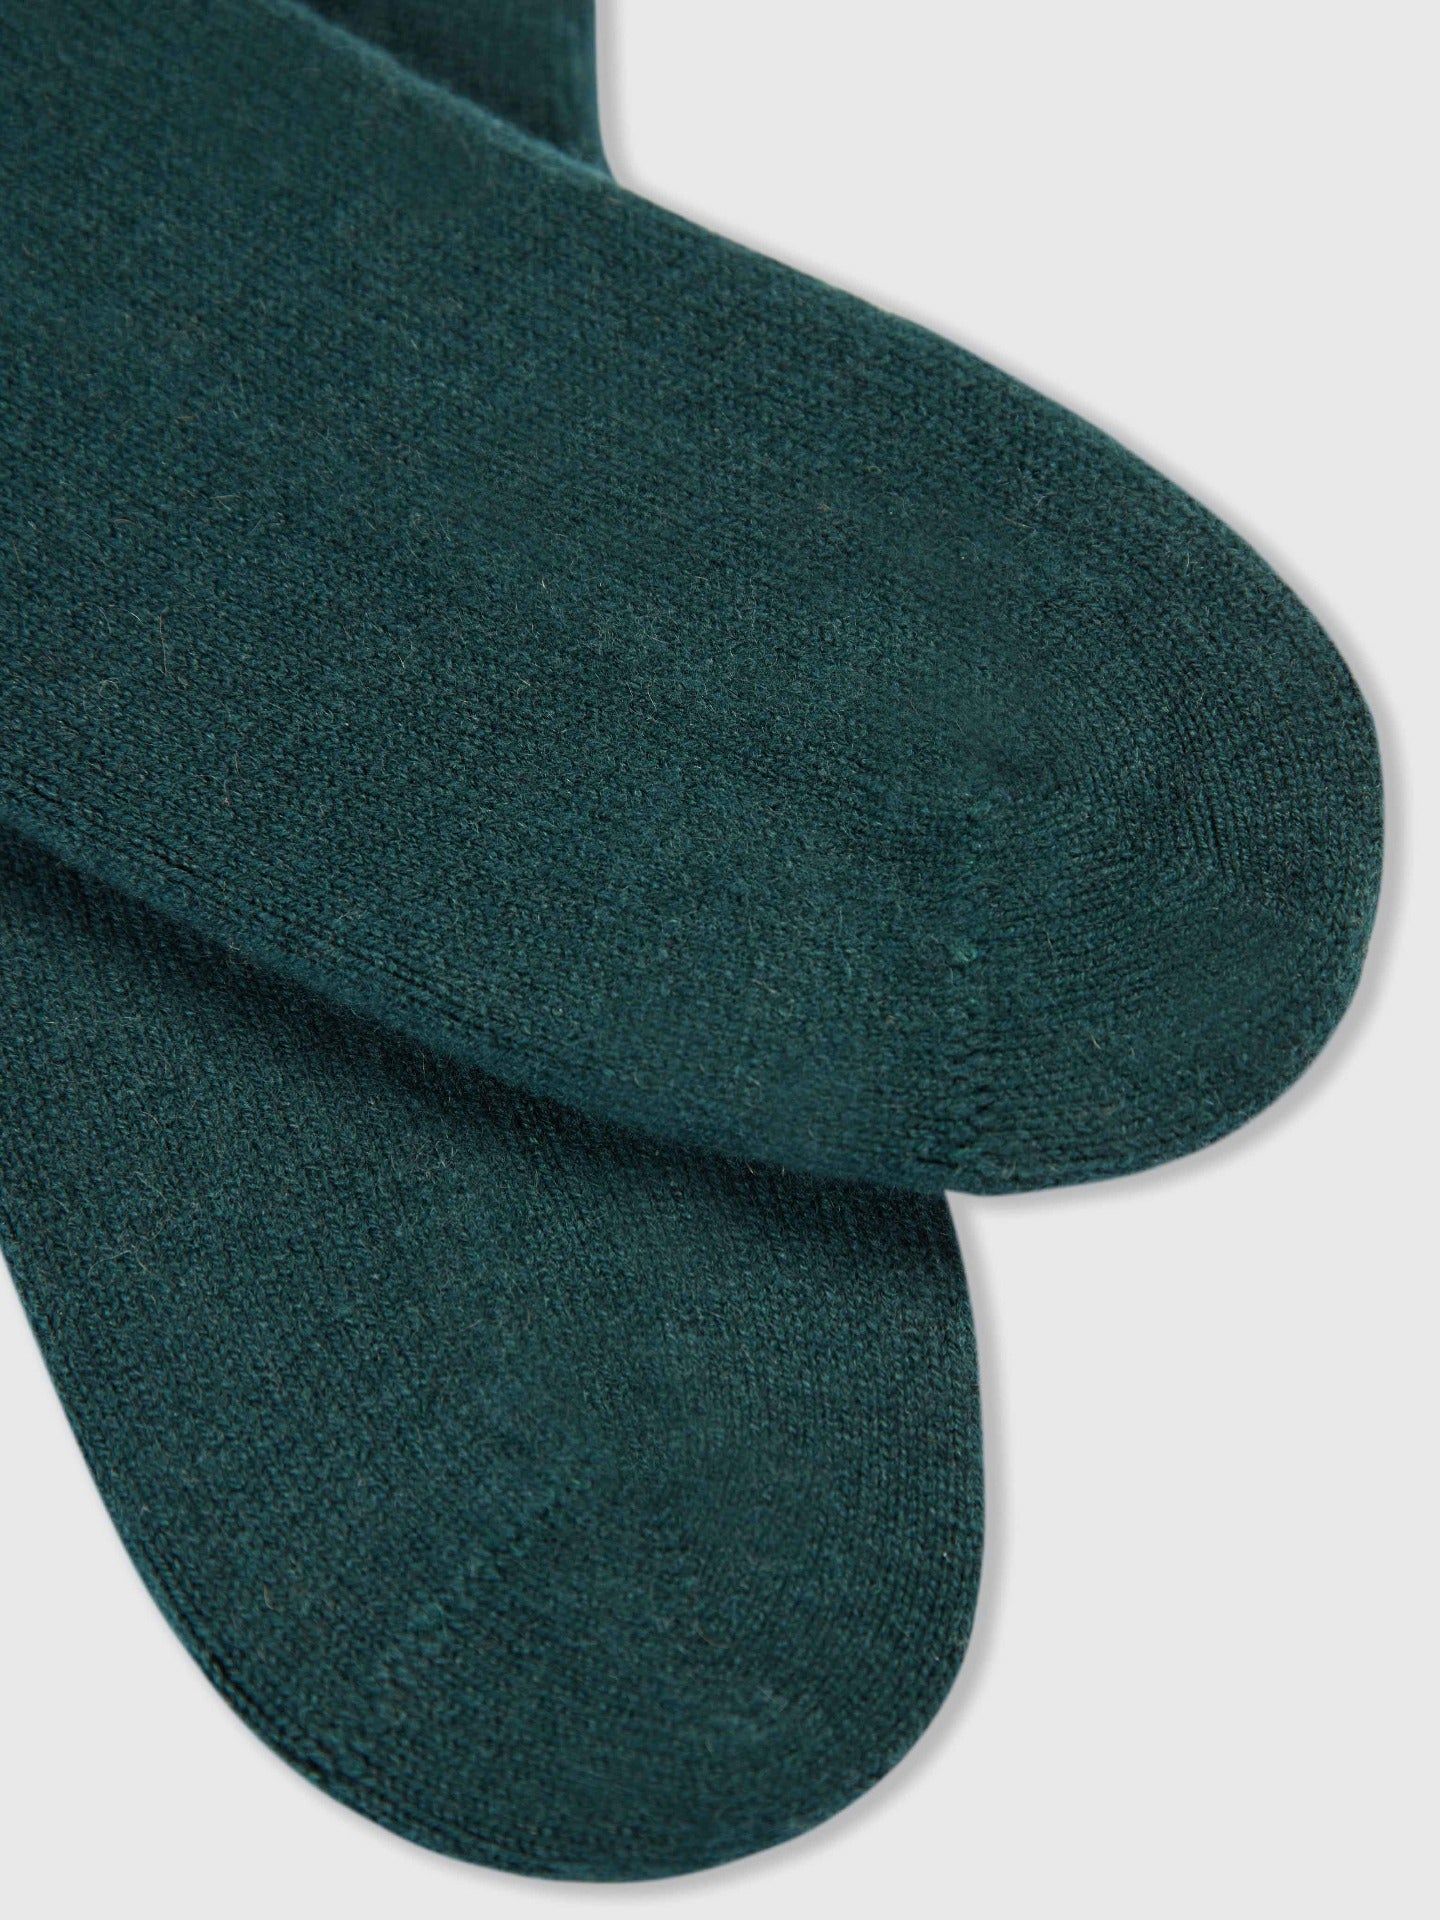 Women's Cashmere  Basic Socks Trekking Green - Gobi Cashmere